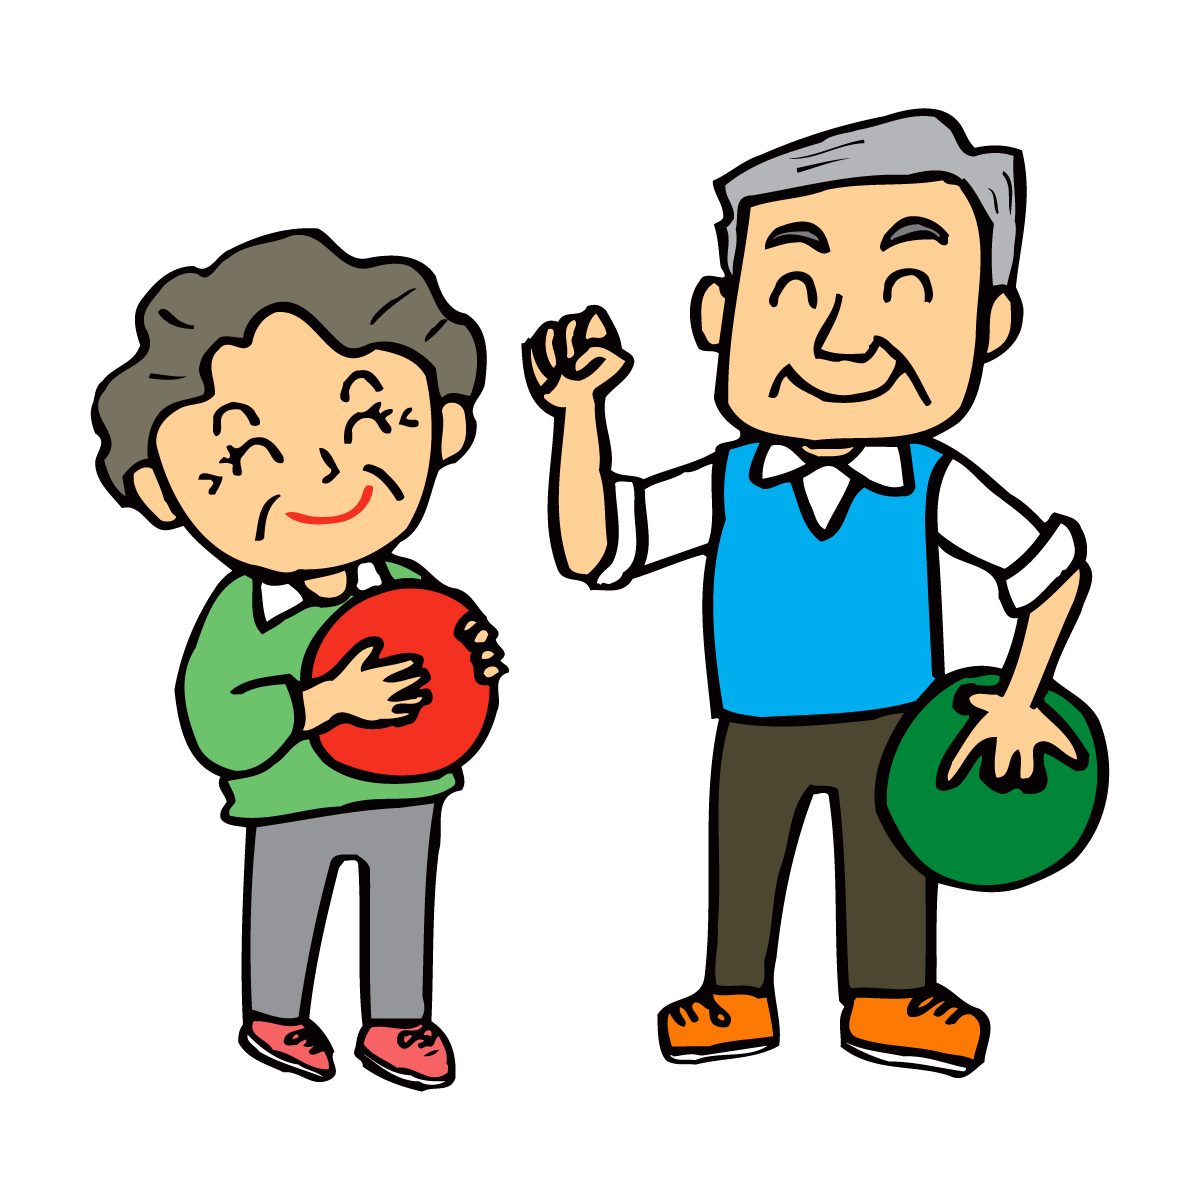 ボーリングレクリエーション 6種 高齢者向け 効果 目的は やり方 ルールも みんなのお助け Navi 高齢者向けレク 脳トレクイズ紹介サイト